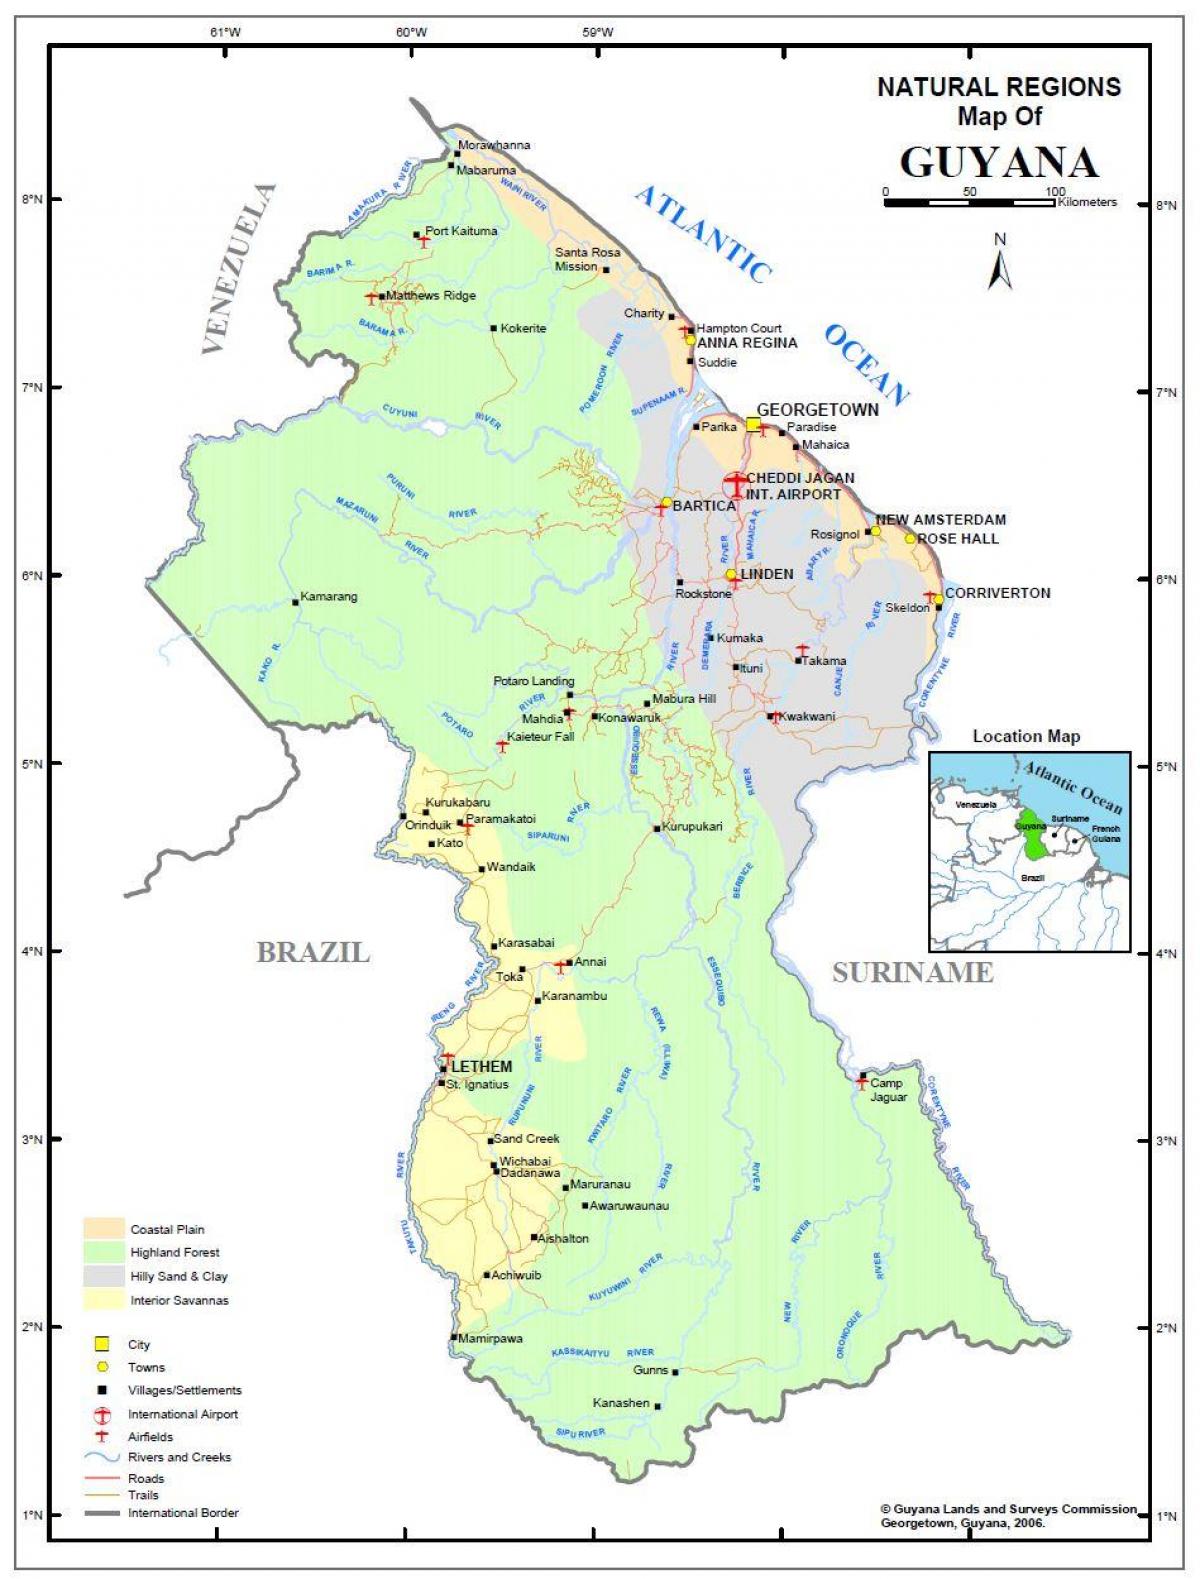 नक्शे के गुयाना दिखा 4 प्राकृतिक क्षेत्रों